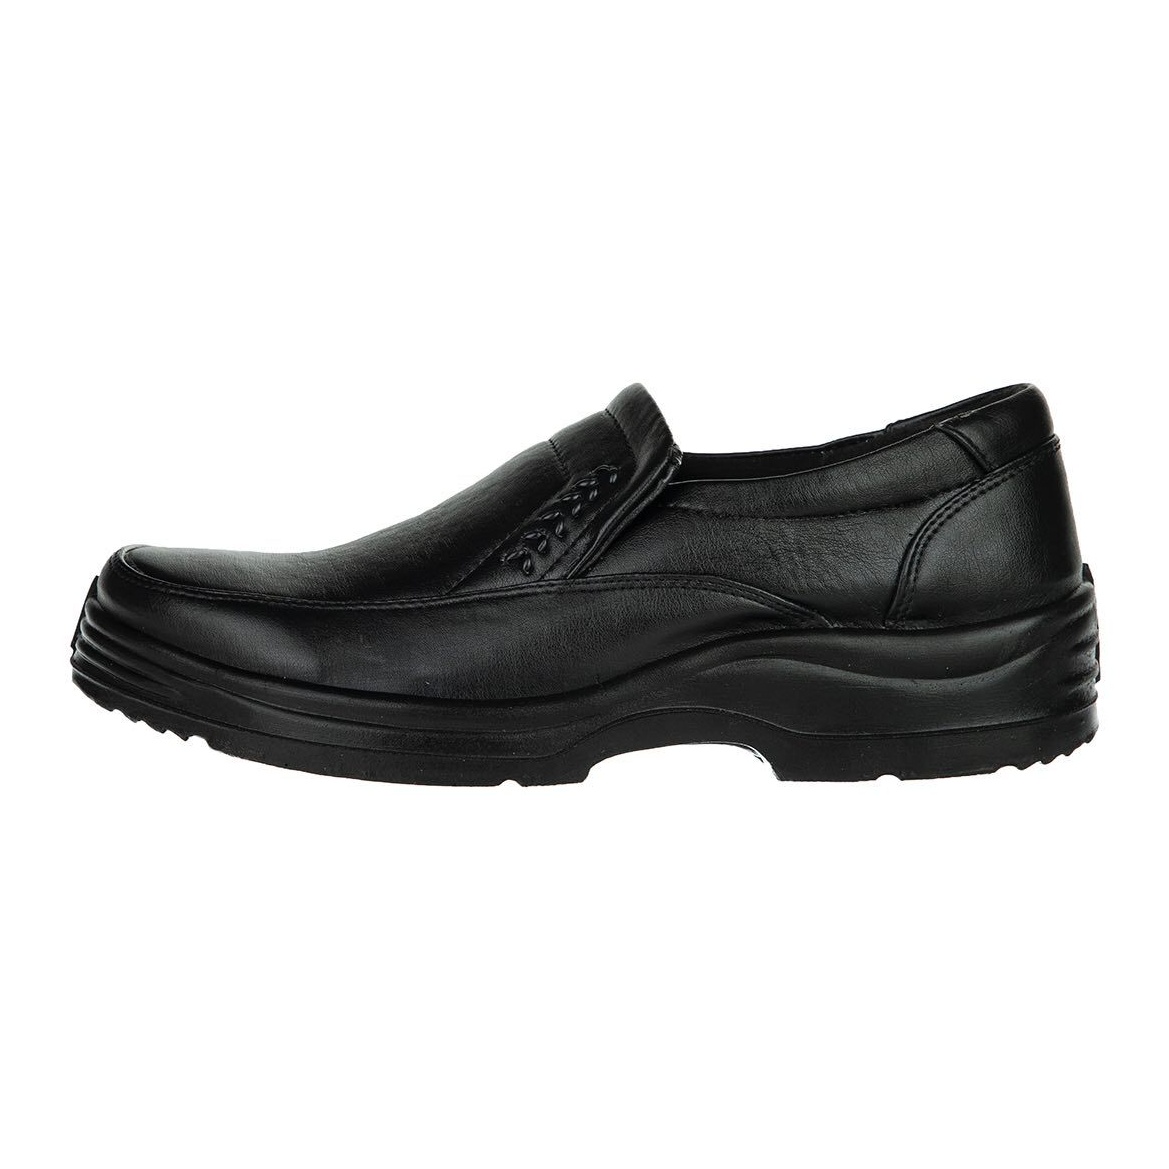 کفش مردانه مدل سیلور کد 05